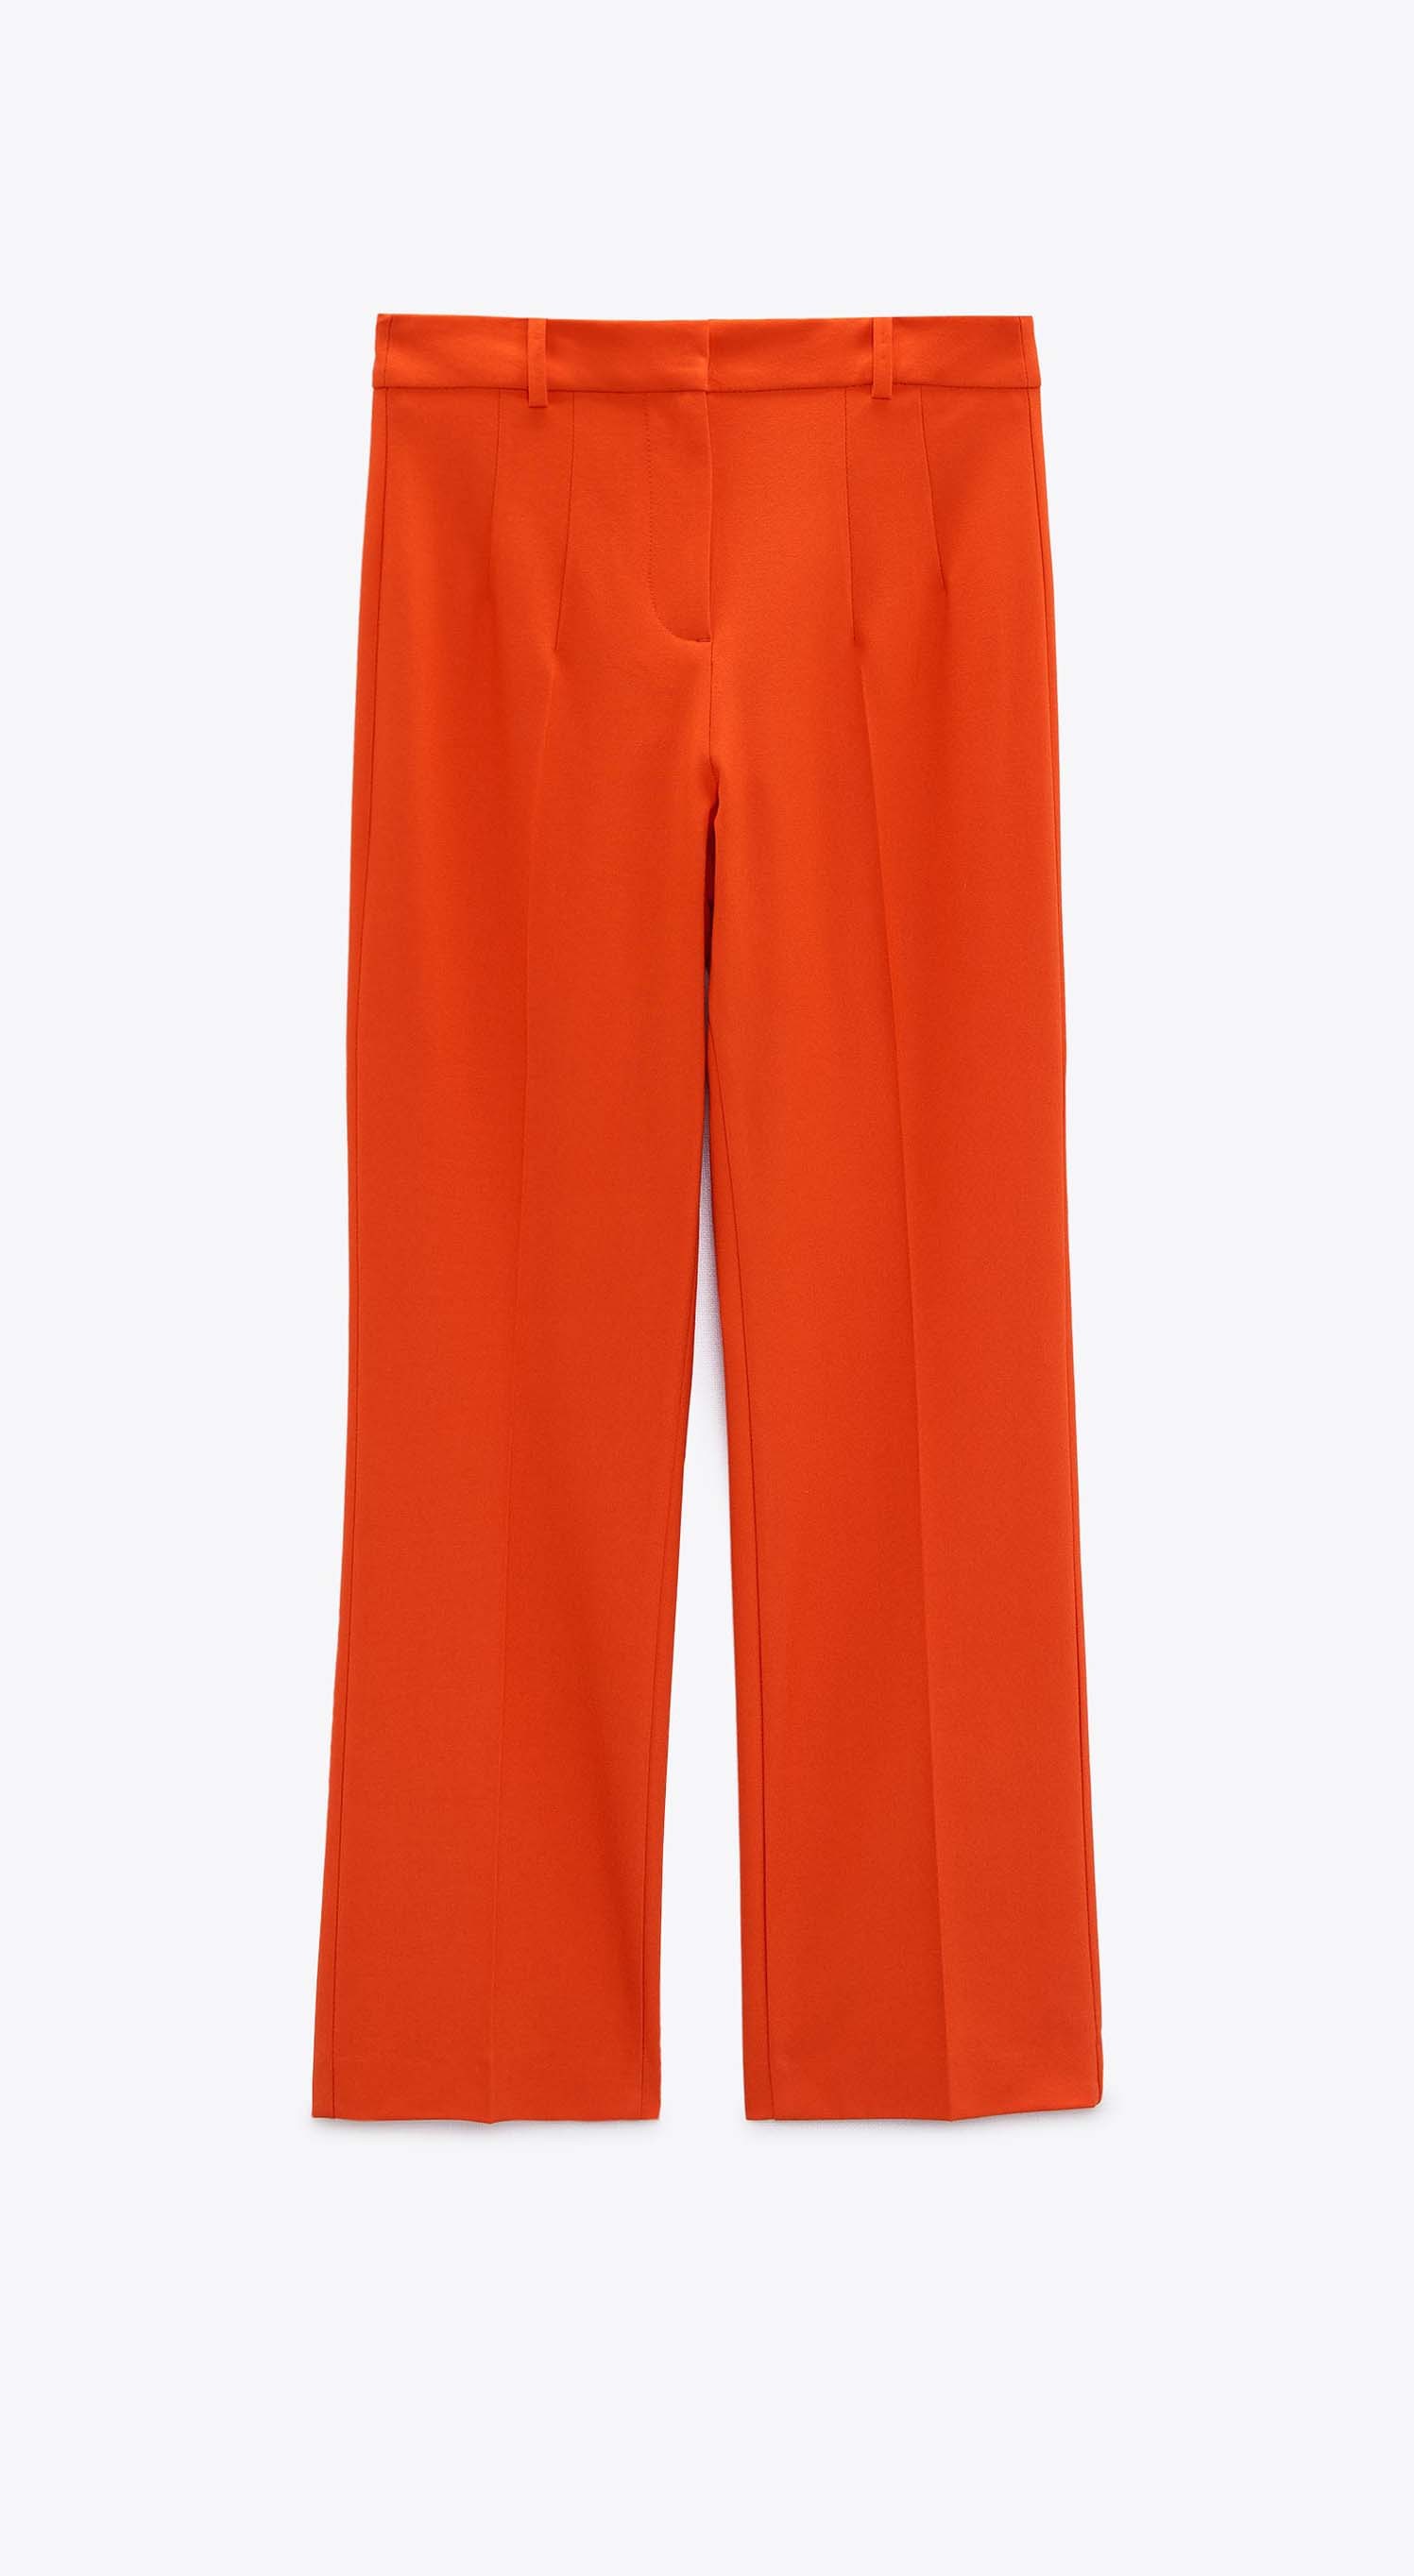 Pantalón mini flare de Zara 9,99 euros